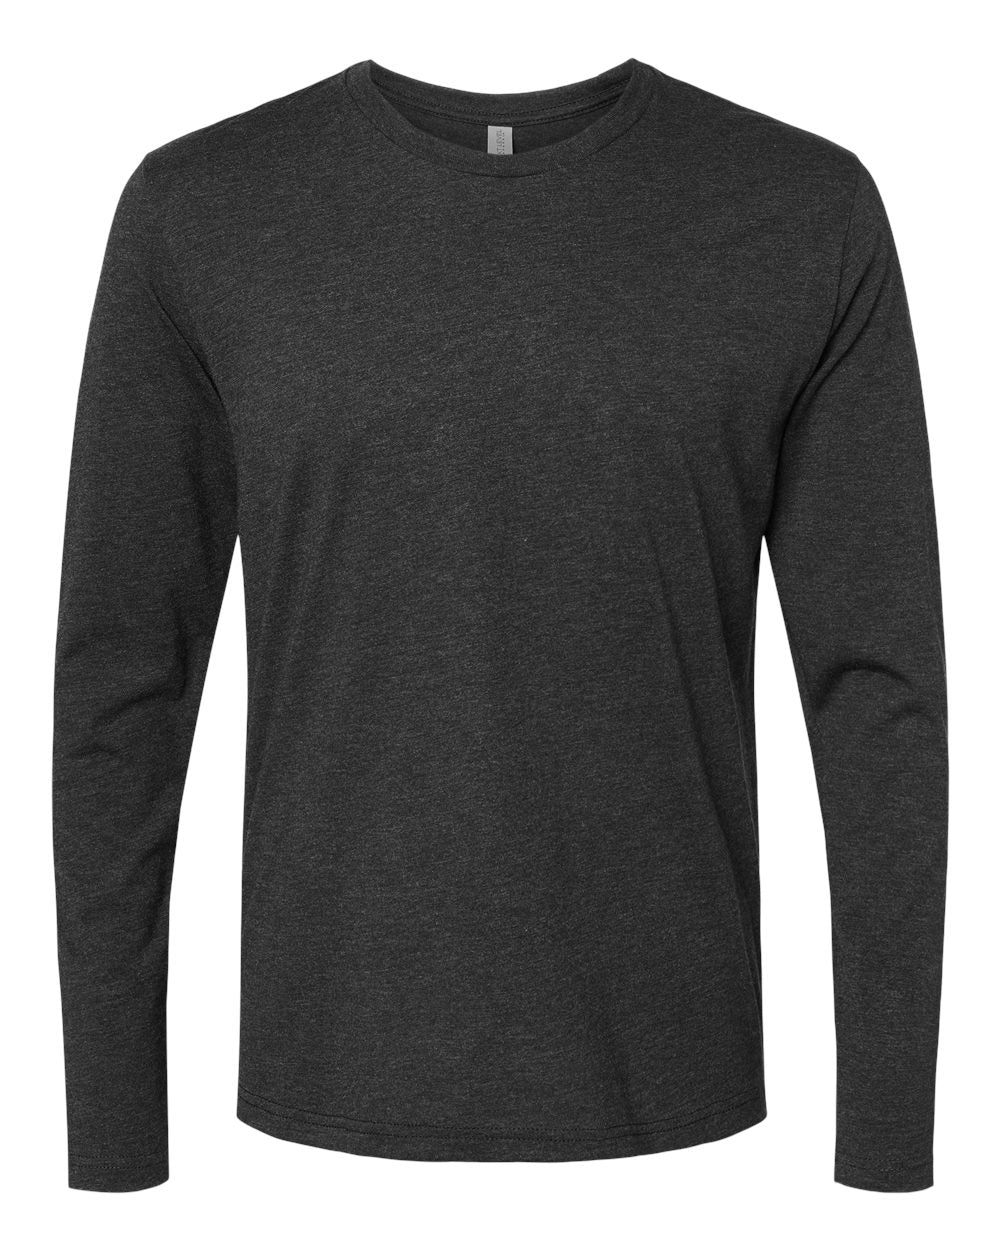 Next Level - Triblend Long Sleeve T-Shirt - 6071